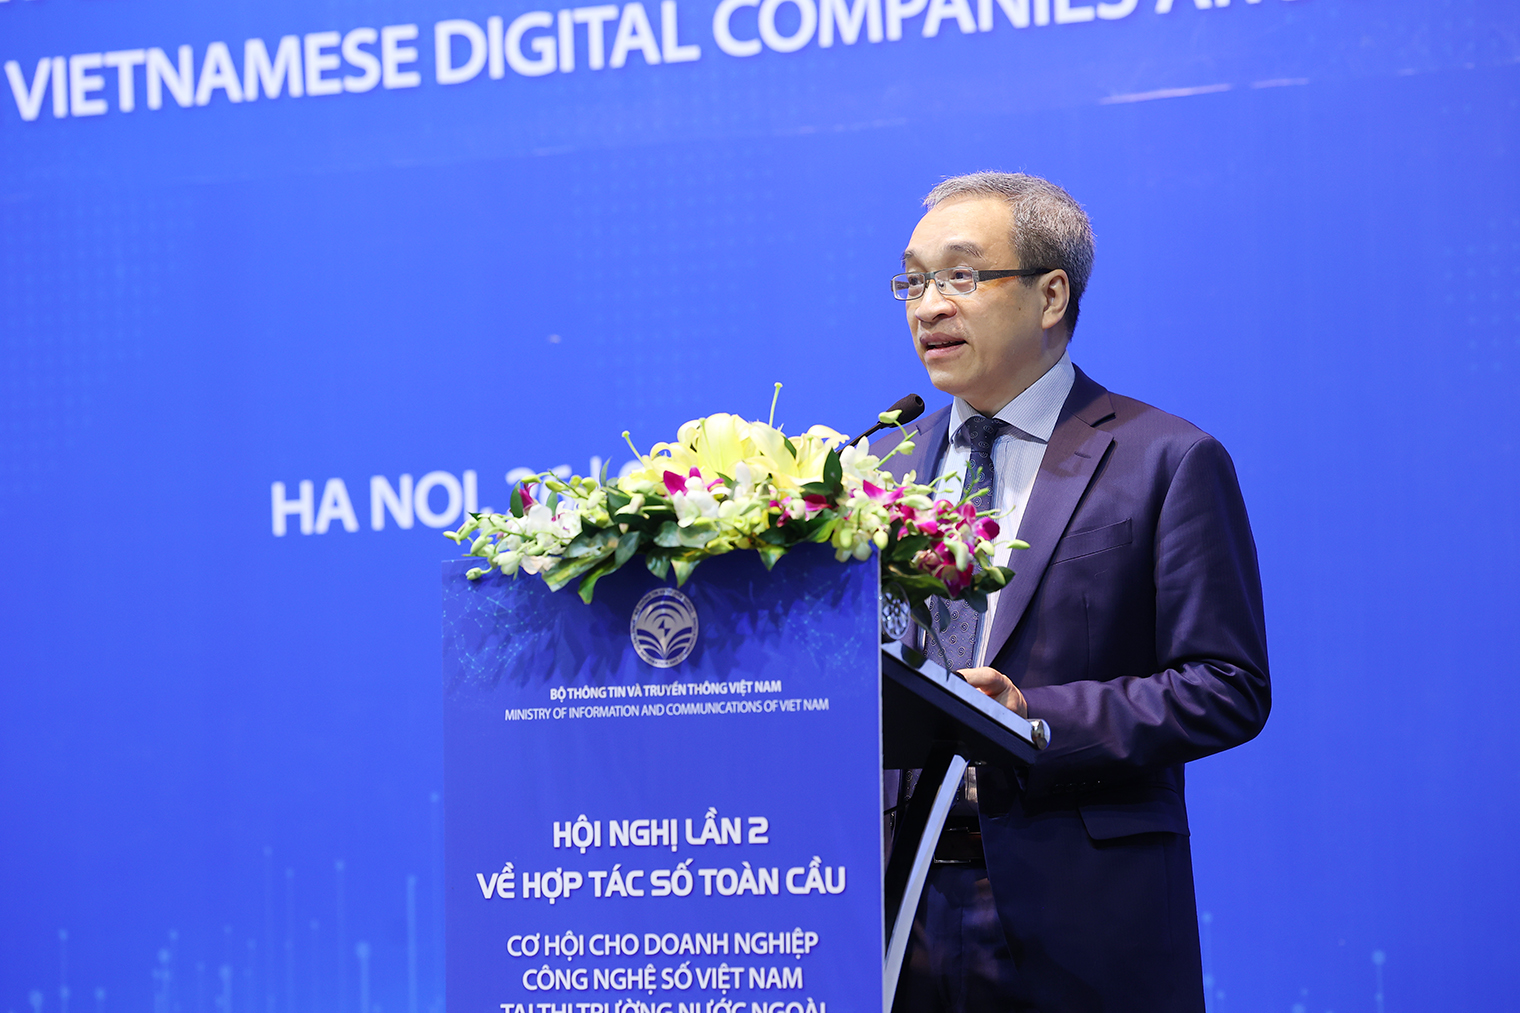 Hợp tác số toàn cầu: Cơ hội cho doanh nghiệp công nghệ số Việt Nam tại thị trường nước ngoài- Ảnh 1.